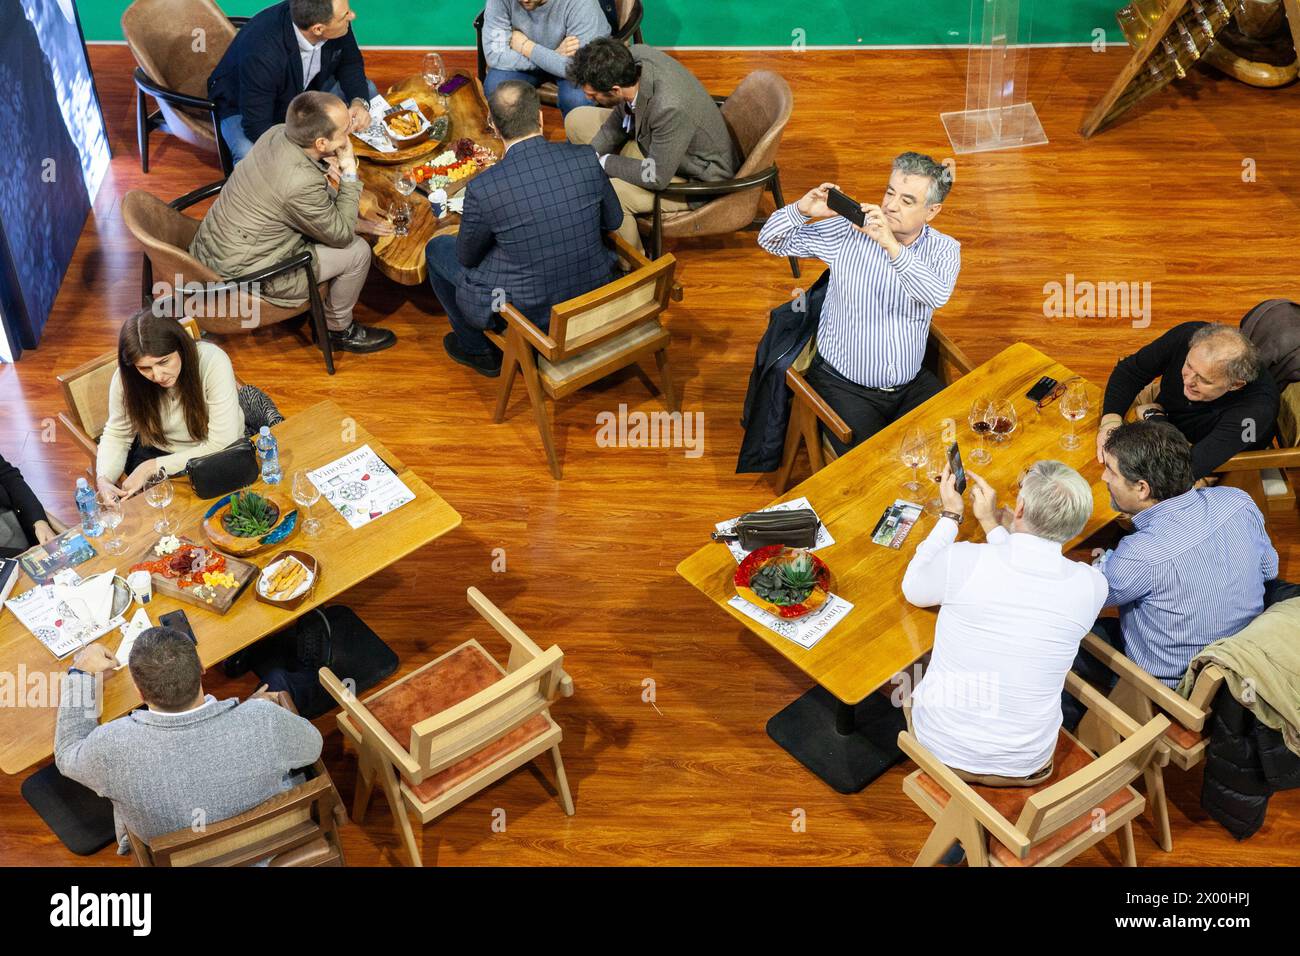 Photo d'un groupe de personnes, vieillards, en train de prendre des photos dans un restaurant serbe alors que d'autres personnes mangent à belgrade, en serbie. Banque D'Images